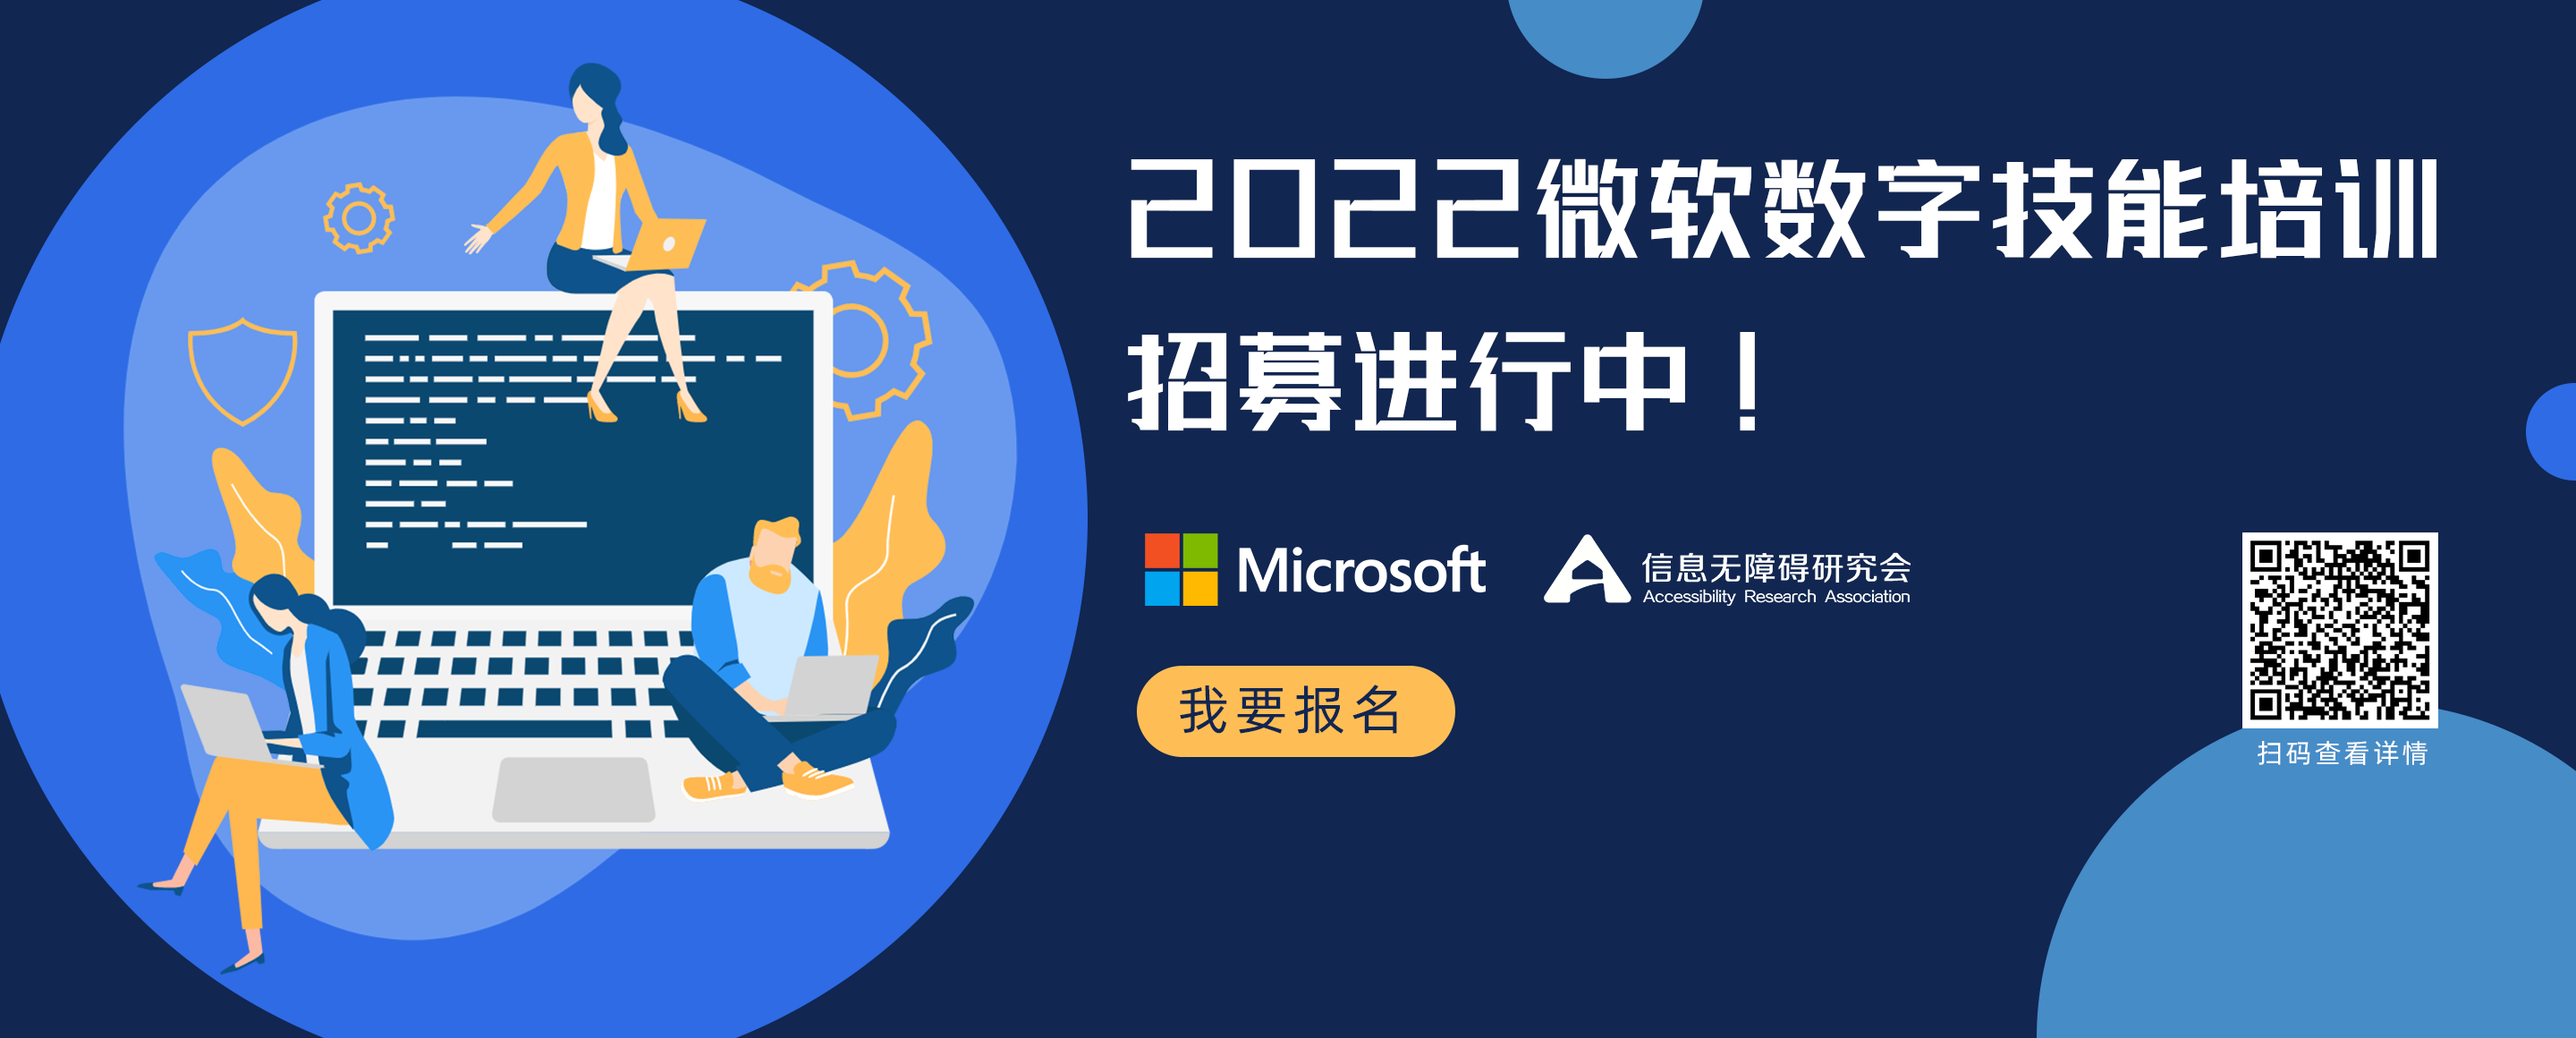 2022微软数字技能培训招募进行中